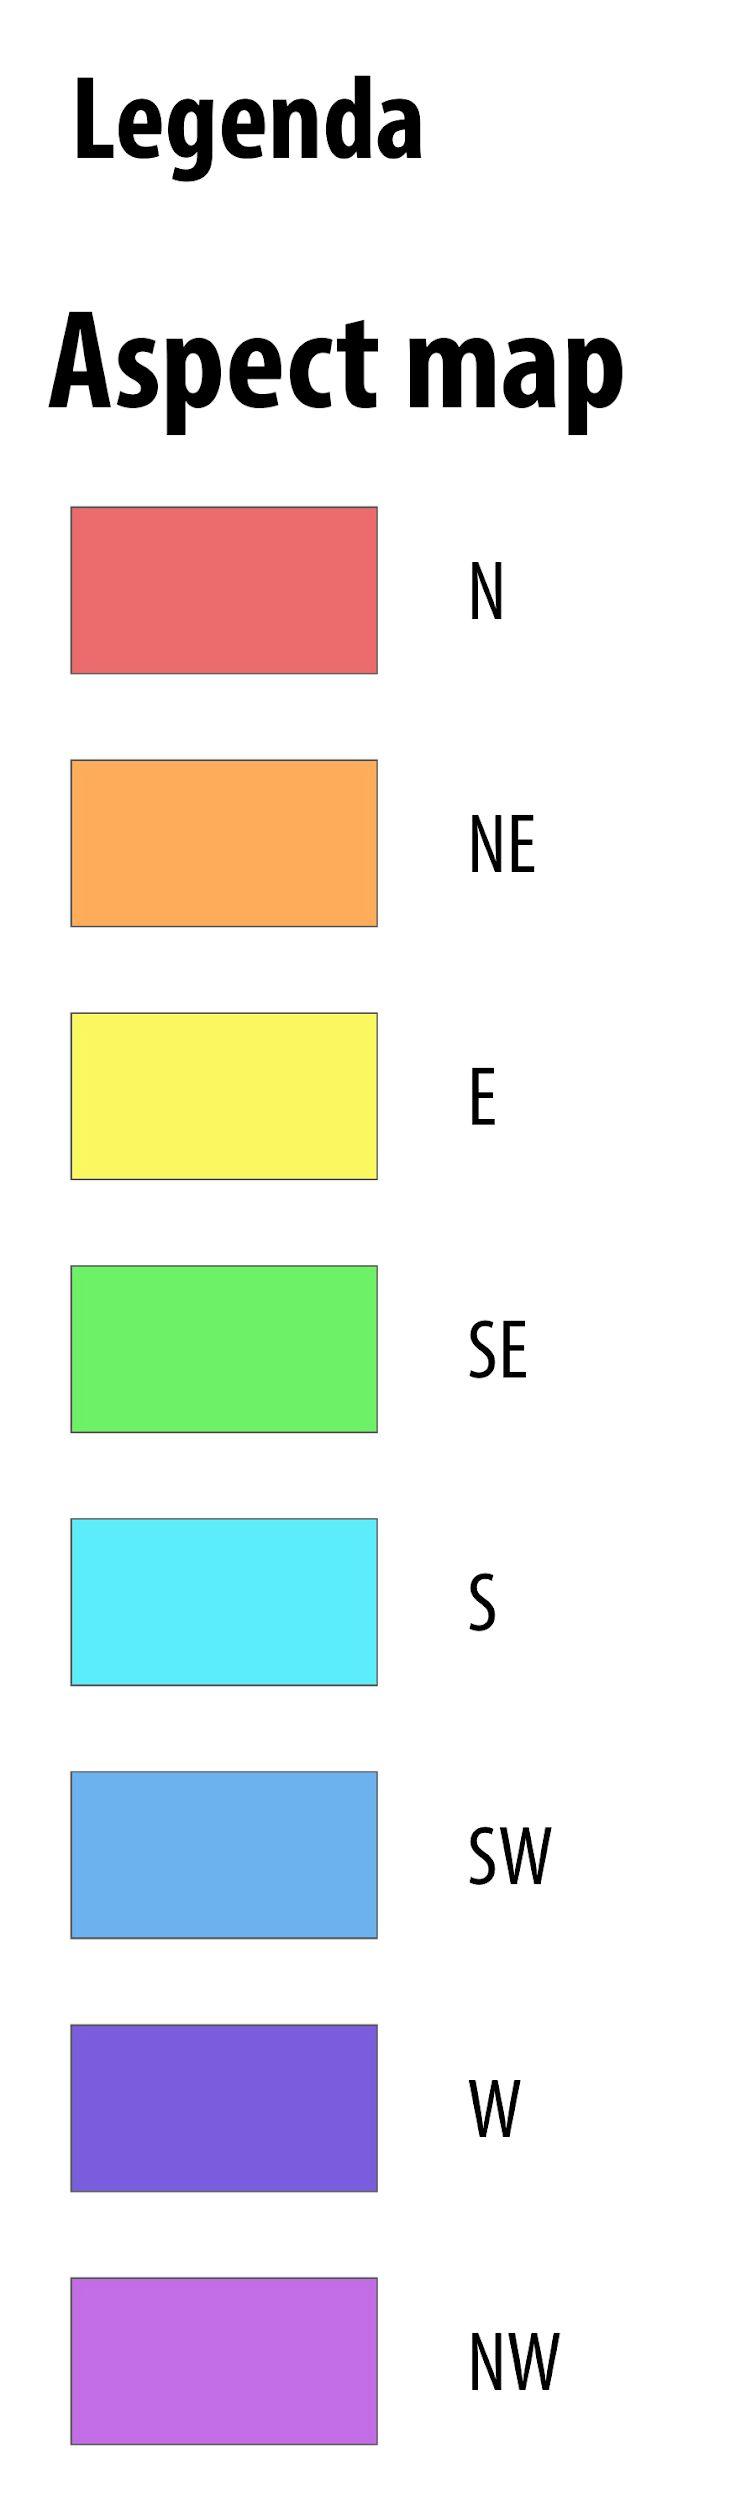 L orientamento dei pendii viene rappresentato da differenti colori.